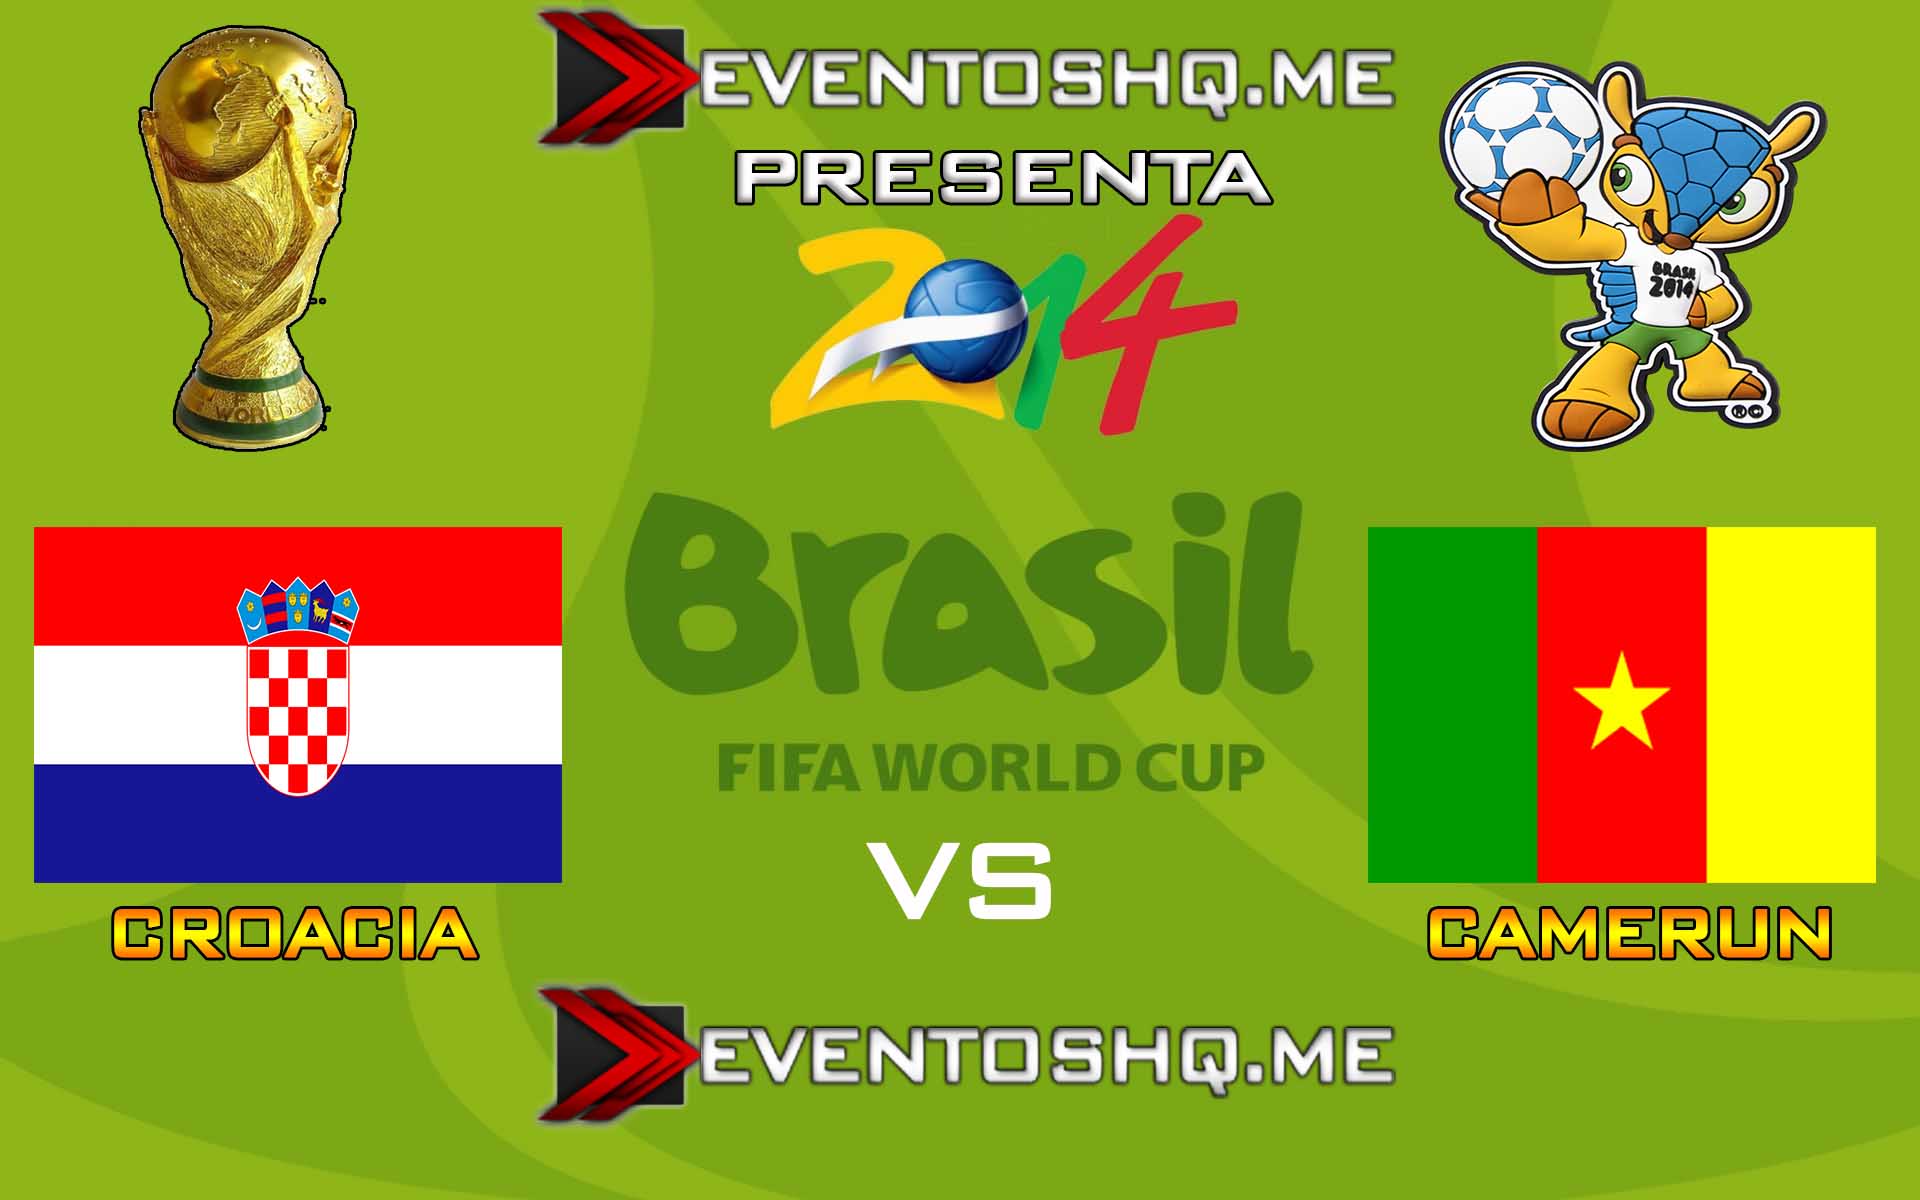 Ver en Vivo Croacia vs Camerun Mundial Brasil 2014 www.eventoshq.me